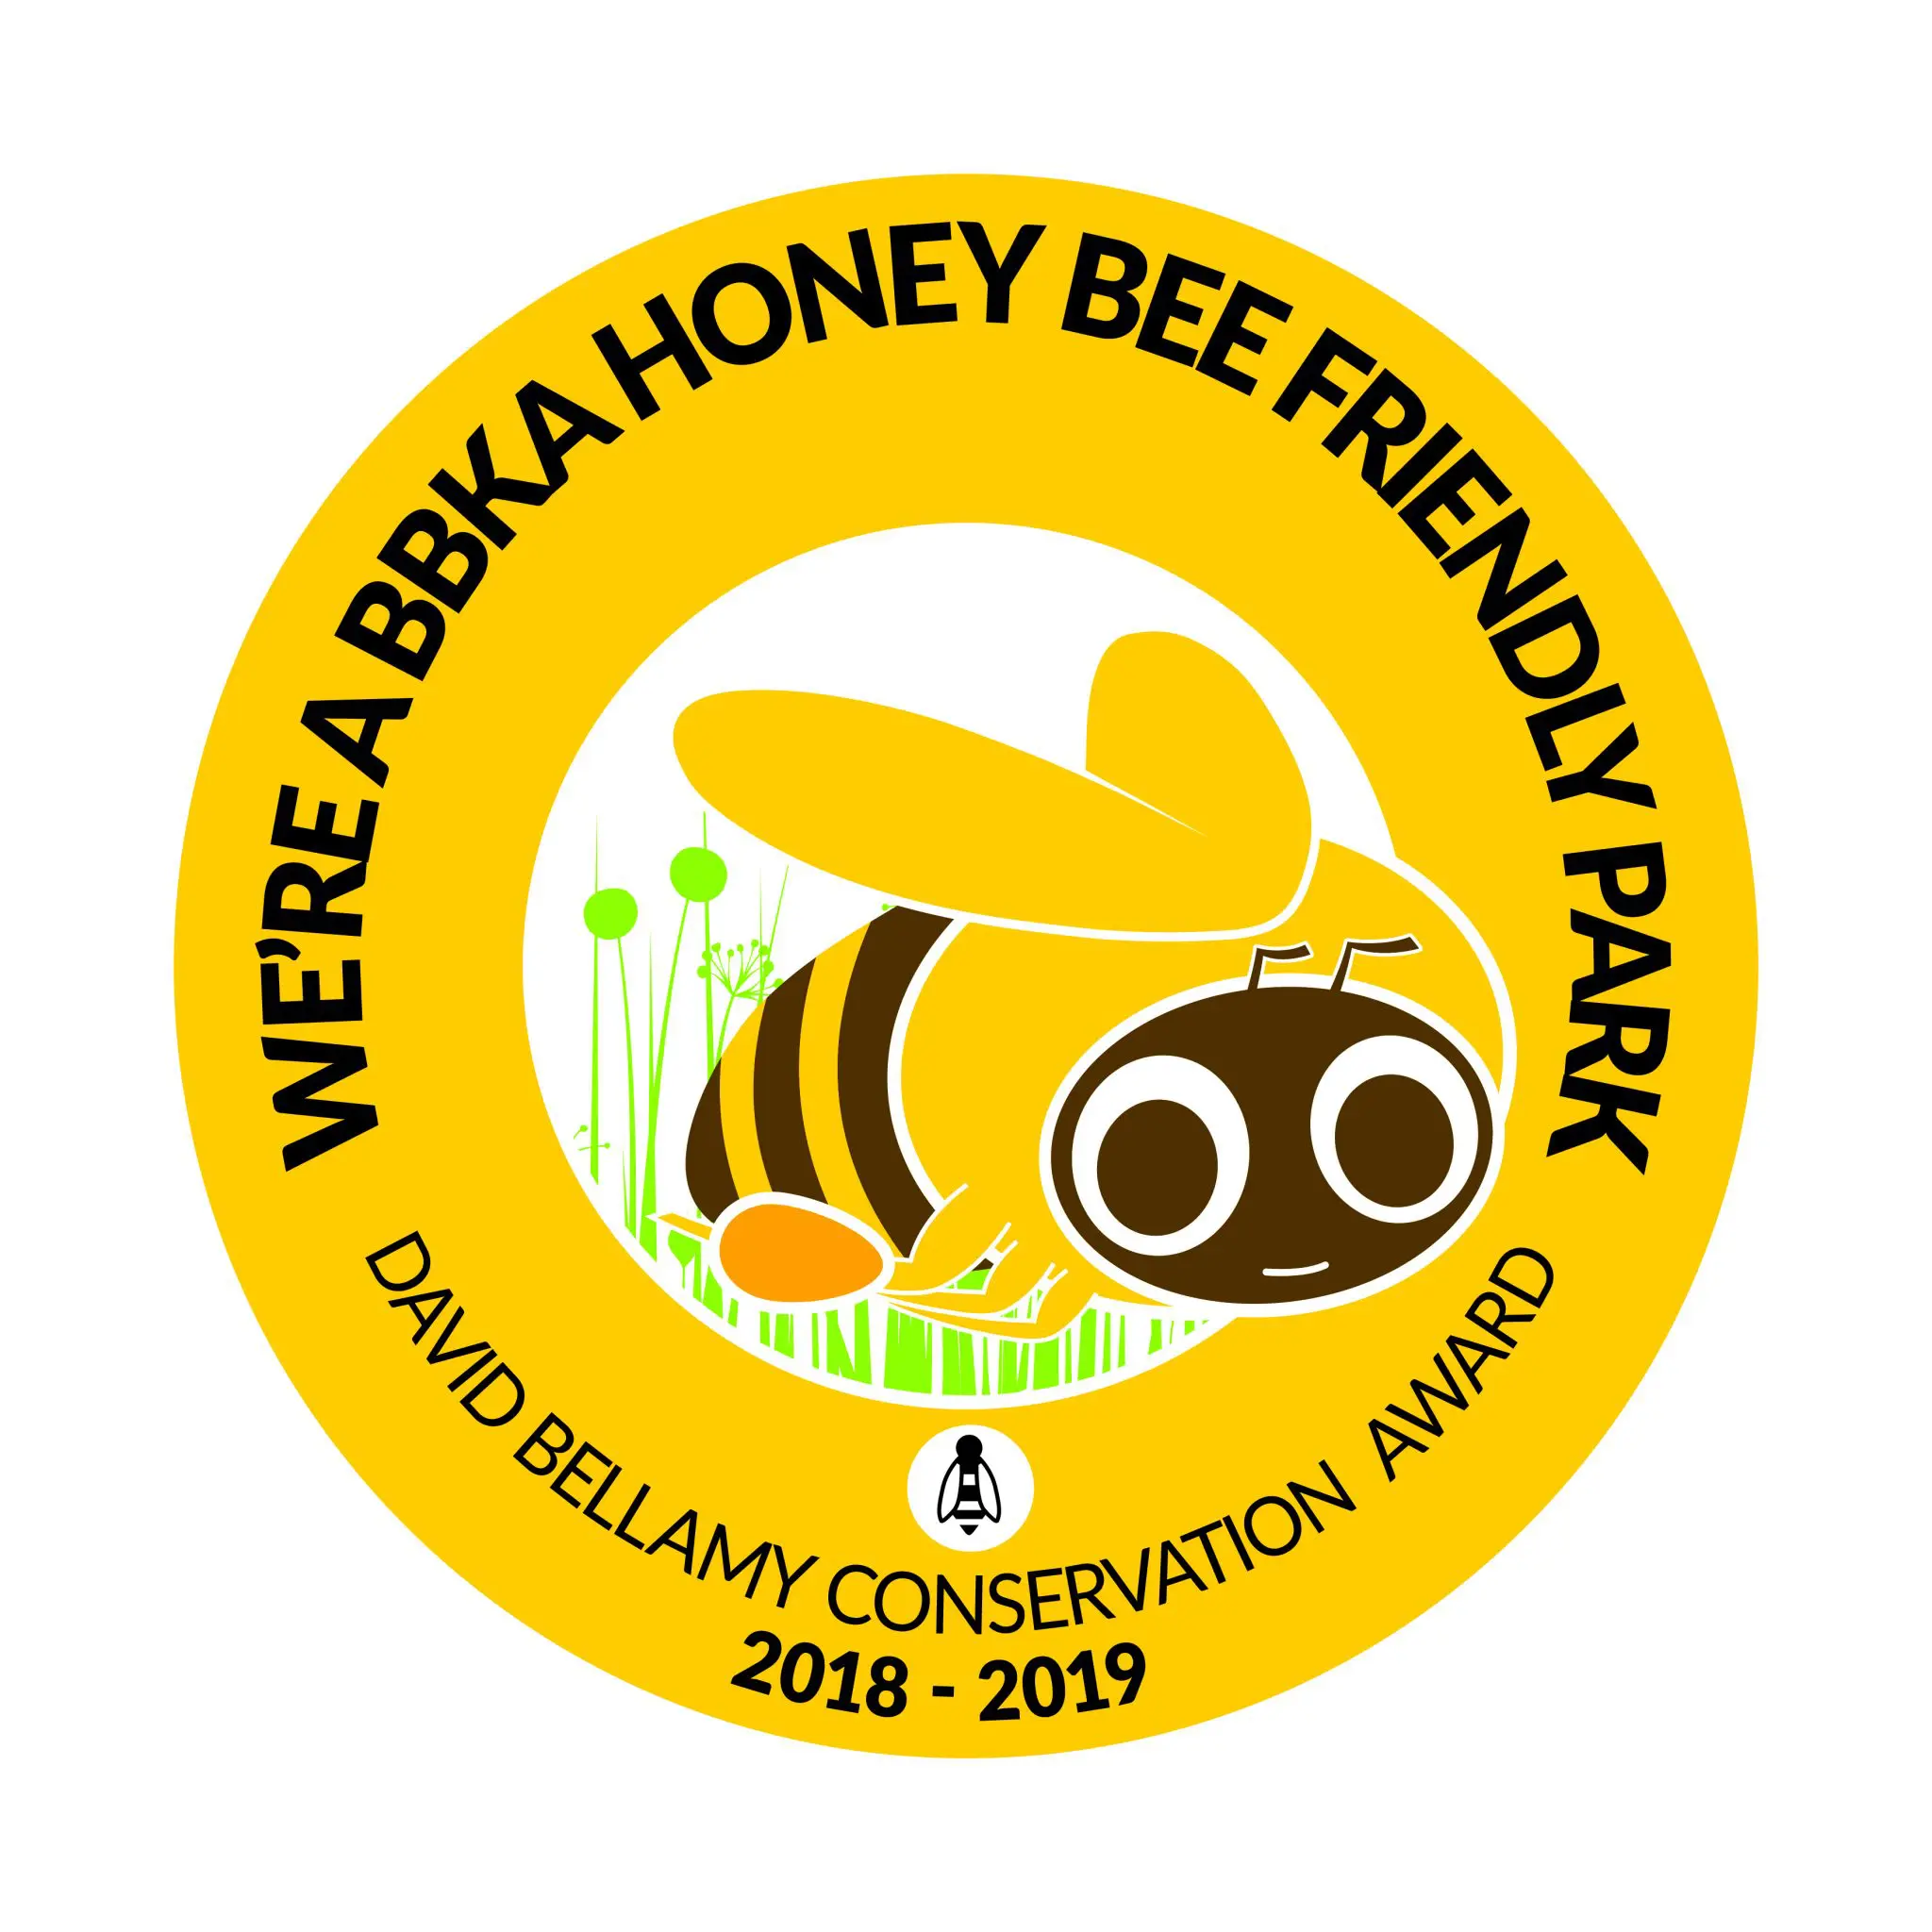 Honey Bee Friendly Park, Llanungar